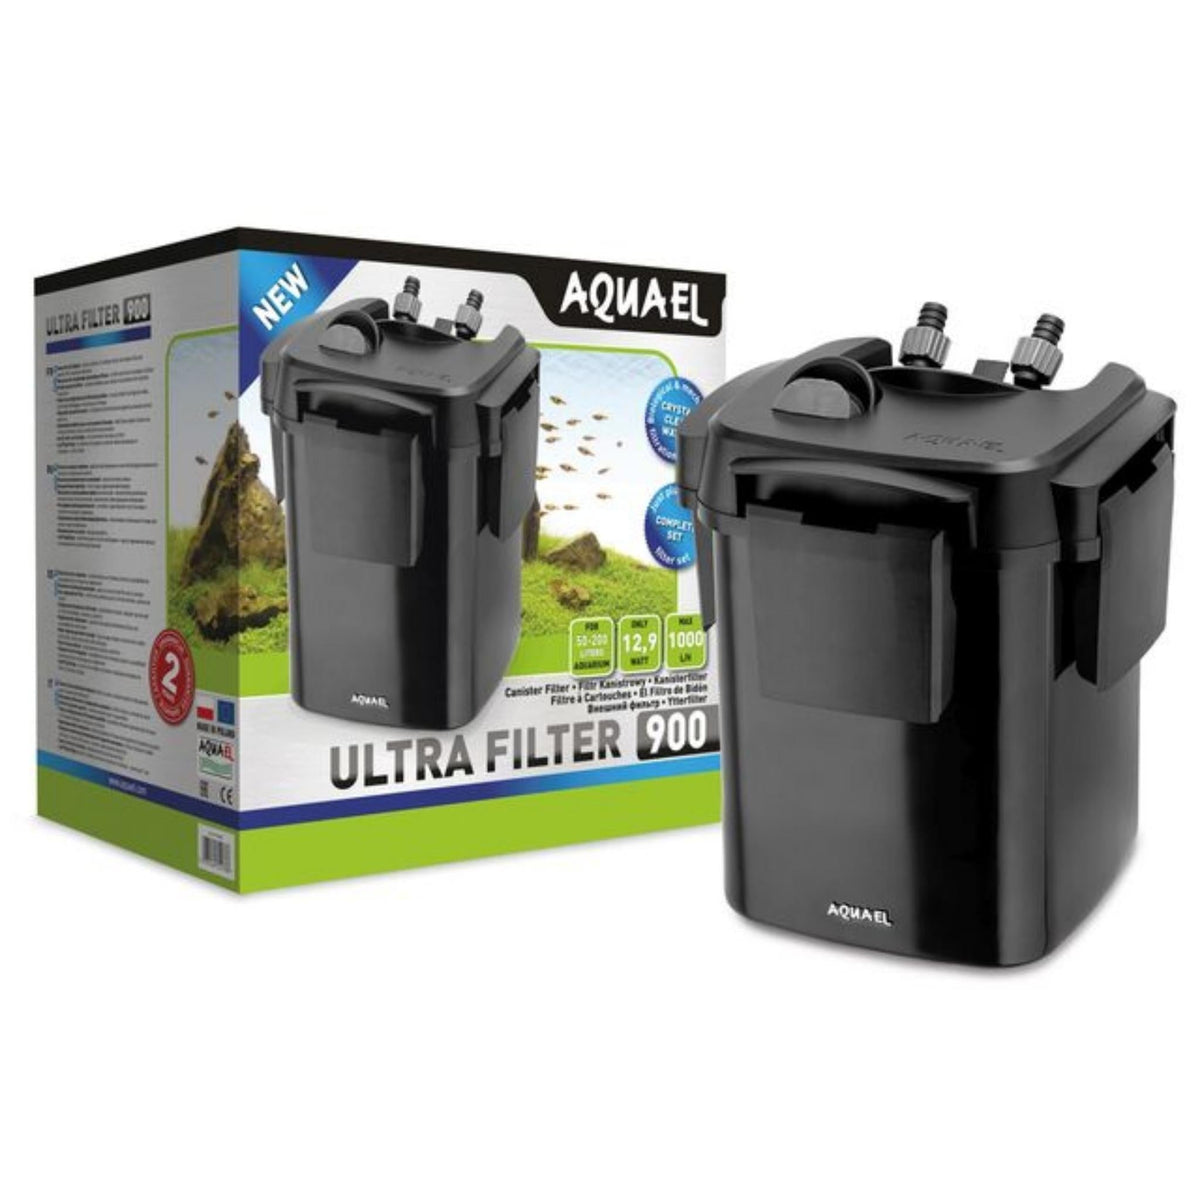 AQUAEL Filter Ultra 900 - Nano Tanks Australia Aquarium Shop